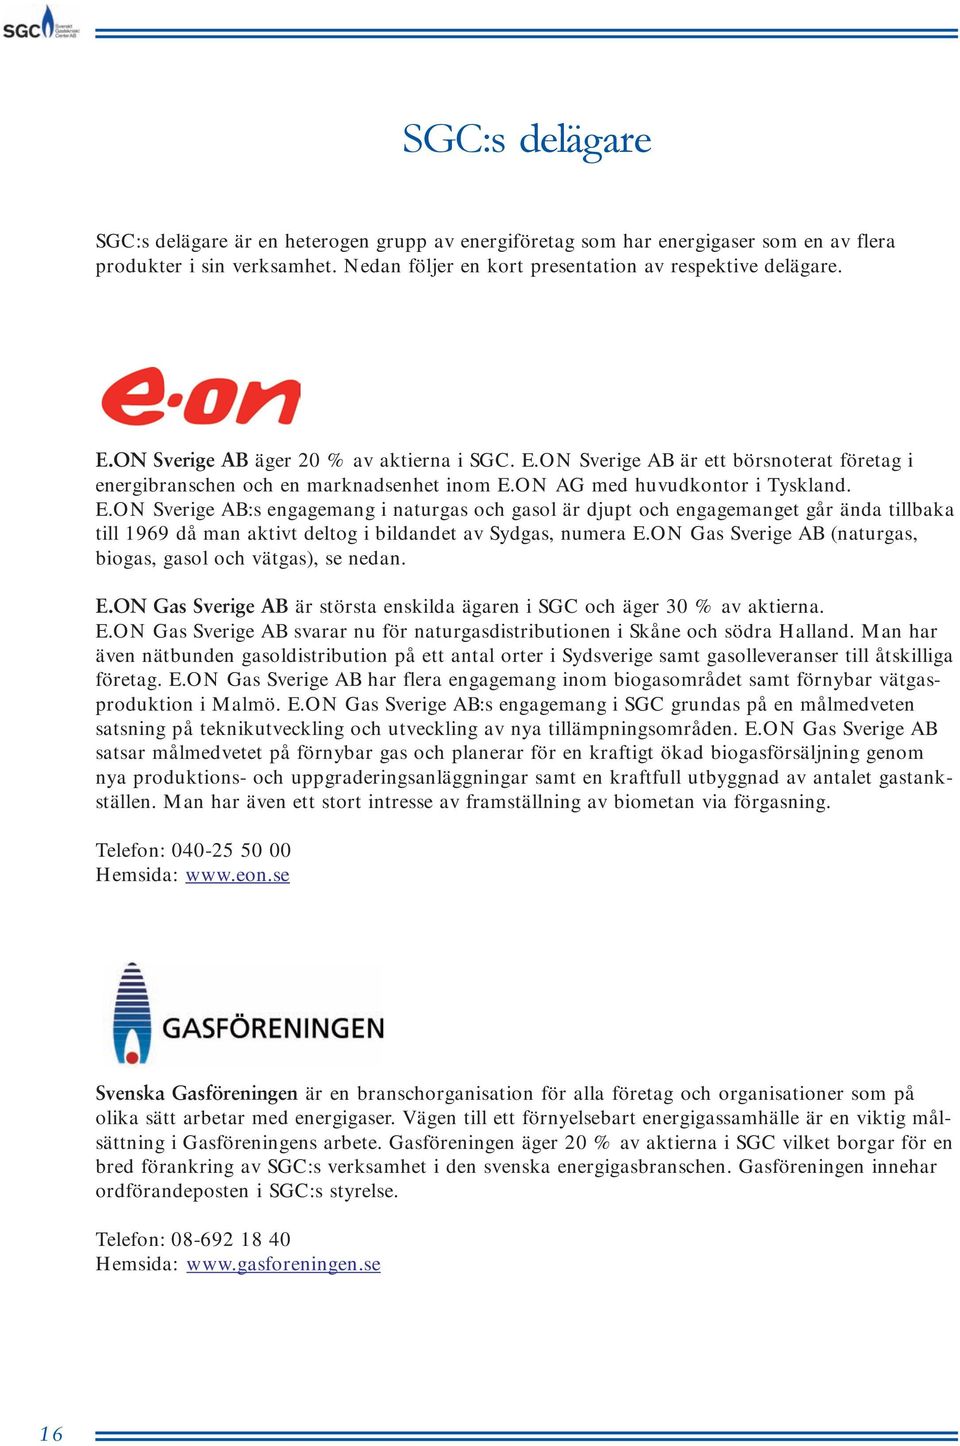 ON Gas Sverige AB (naturgas, biogas, gasol och vätgas), se nedan. E.ON Gas Sverige AB är största enskilda ägaren i SGC och äger 30 % av aktierna. E.ON Gas Sverige AB svarar nu för naturgasdistributionen i Skåne och södra Halland.